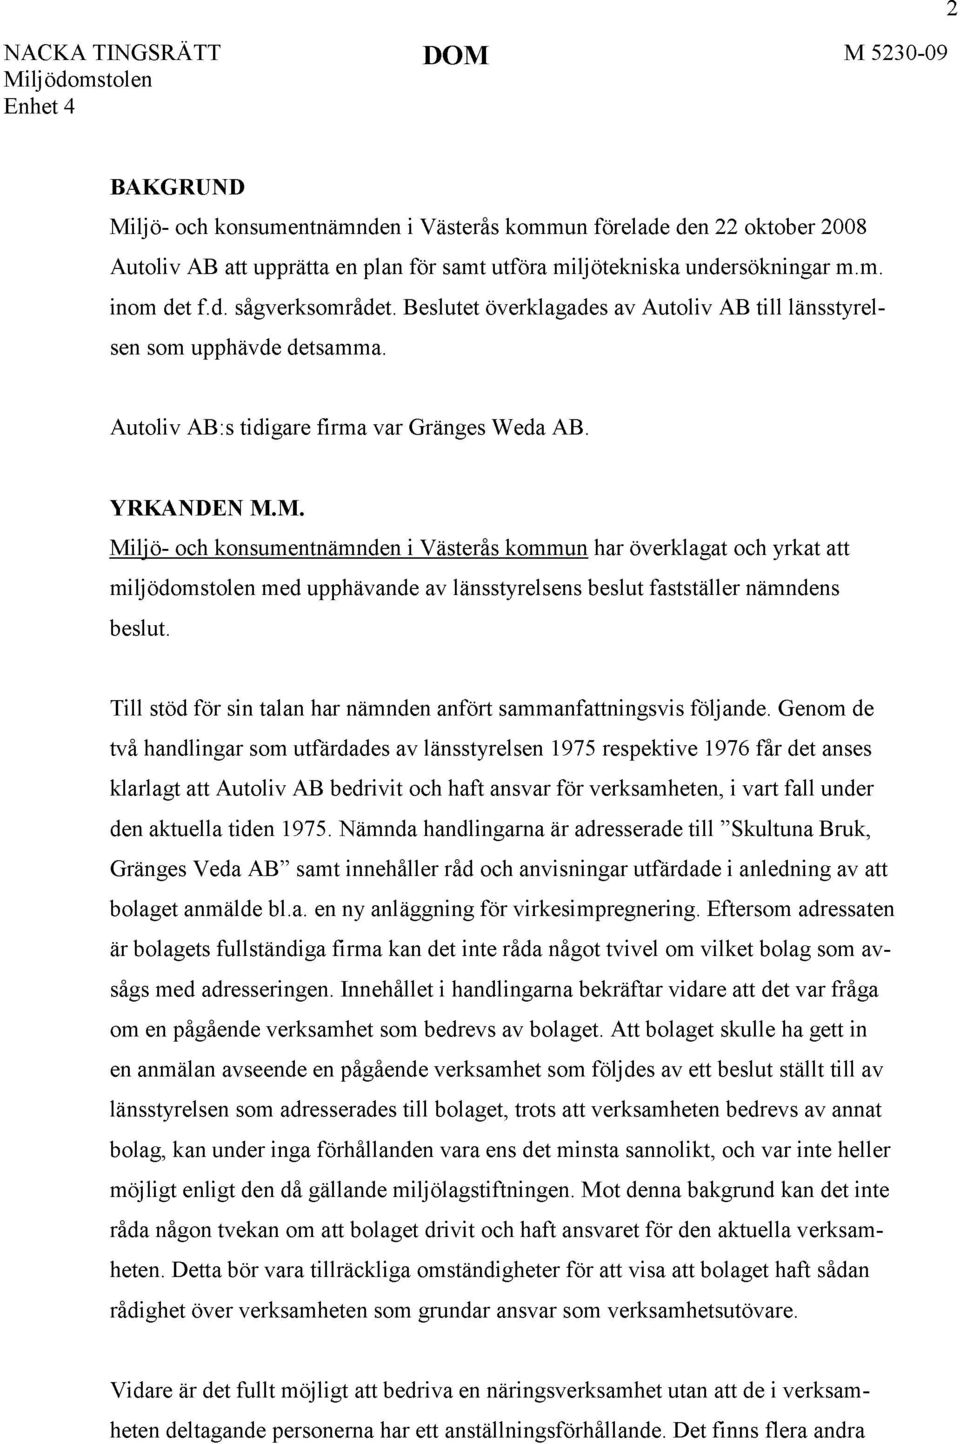 M. Miljö- och konsumentnämnden i Västerås kommun har överklagat och yrkat att miljödomstolen med upphävande av länsstyrelsens beslut fastställer nämndens beslut.